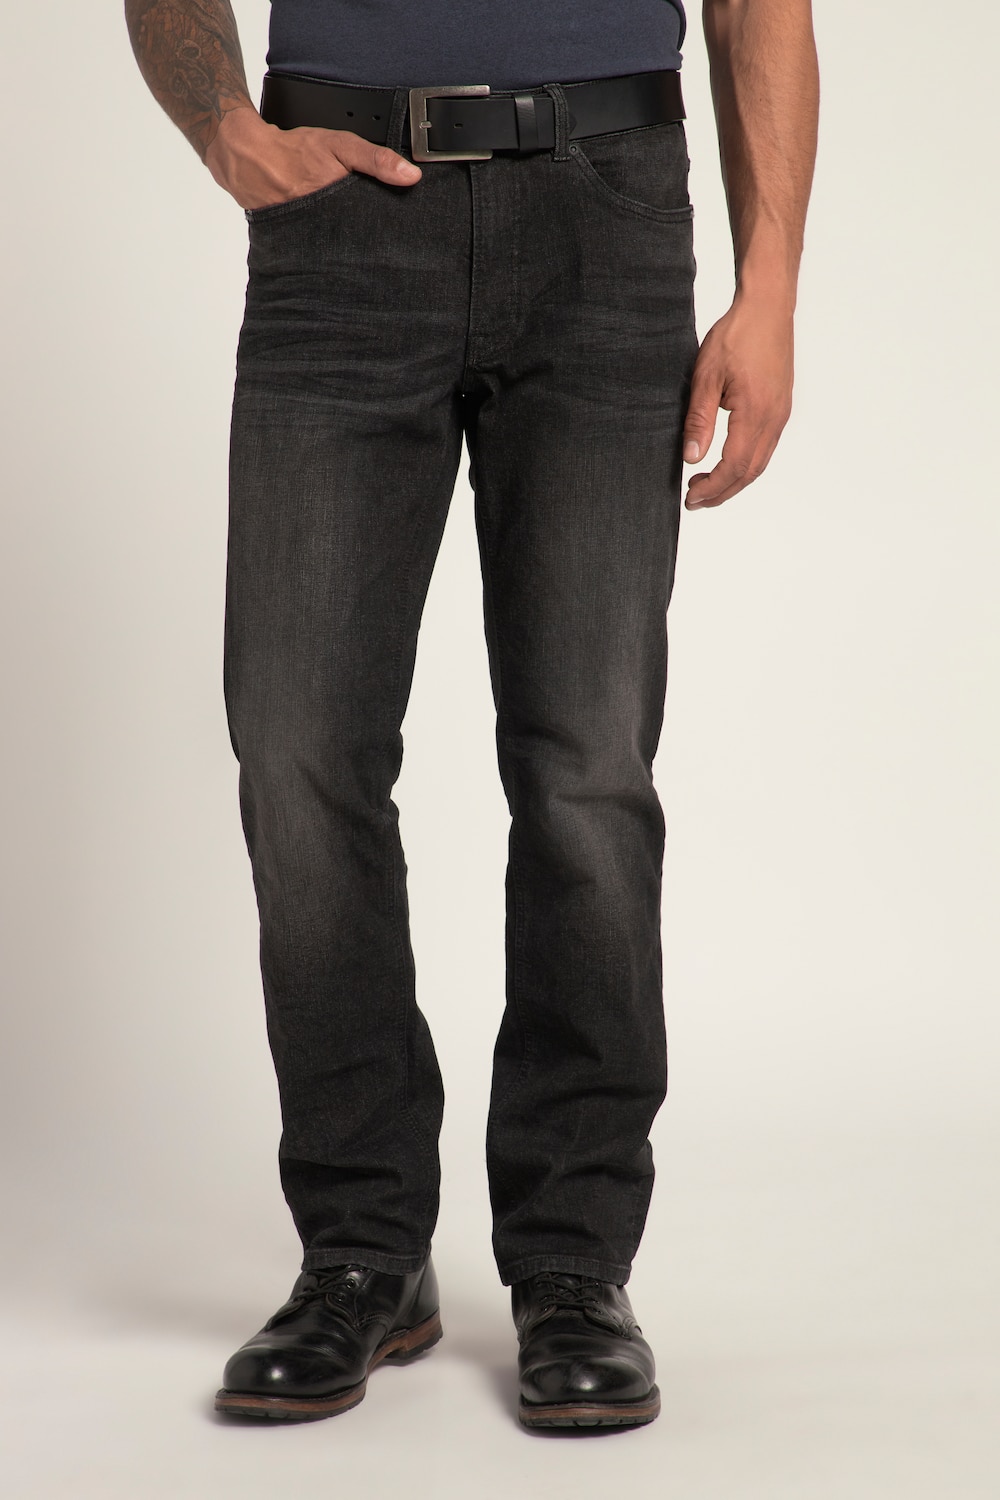 Grote Maten Jeans, Heren, zwart, Maat: 33, Katoen, JP1880